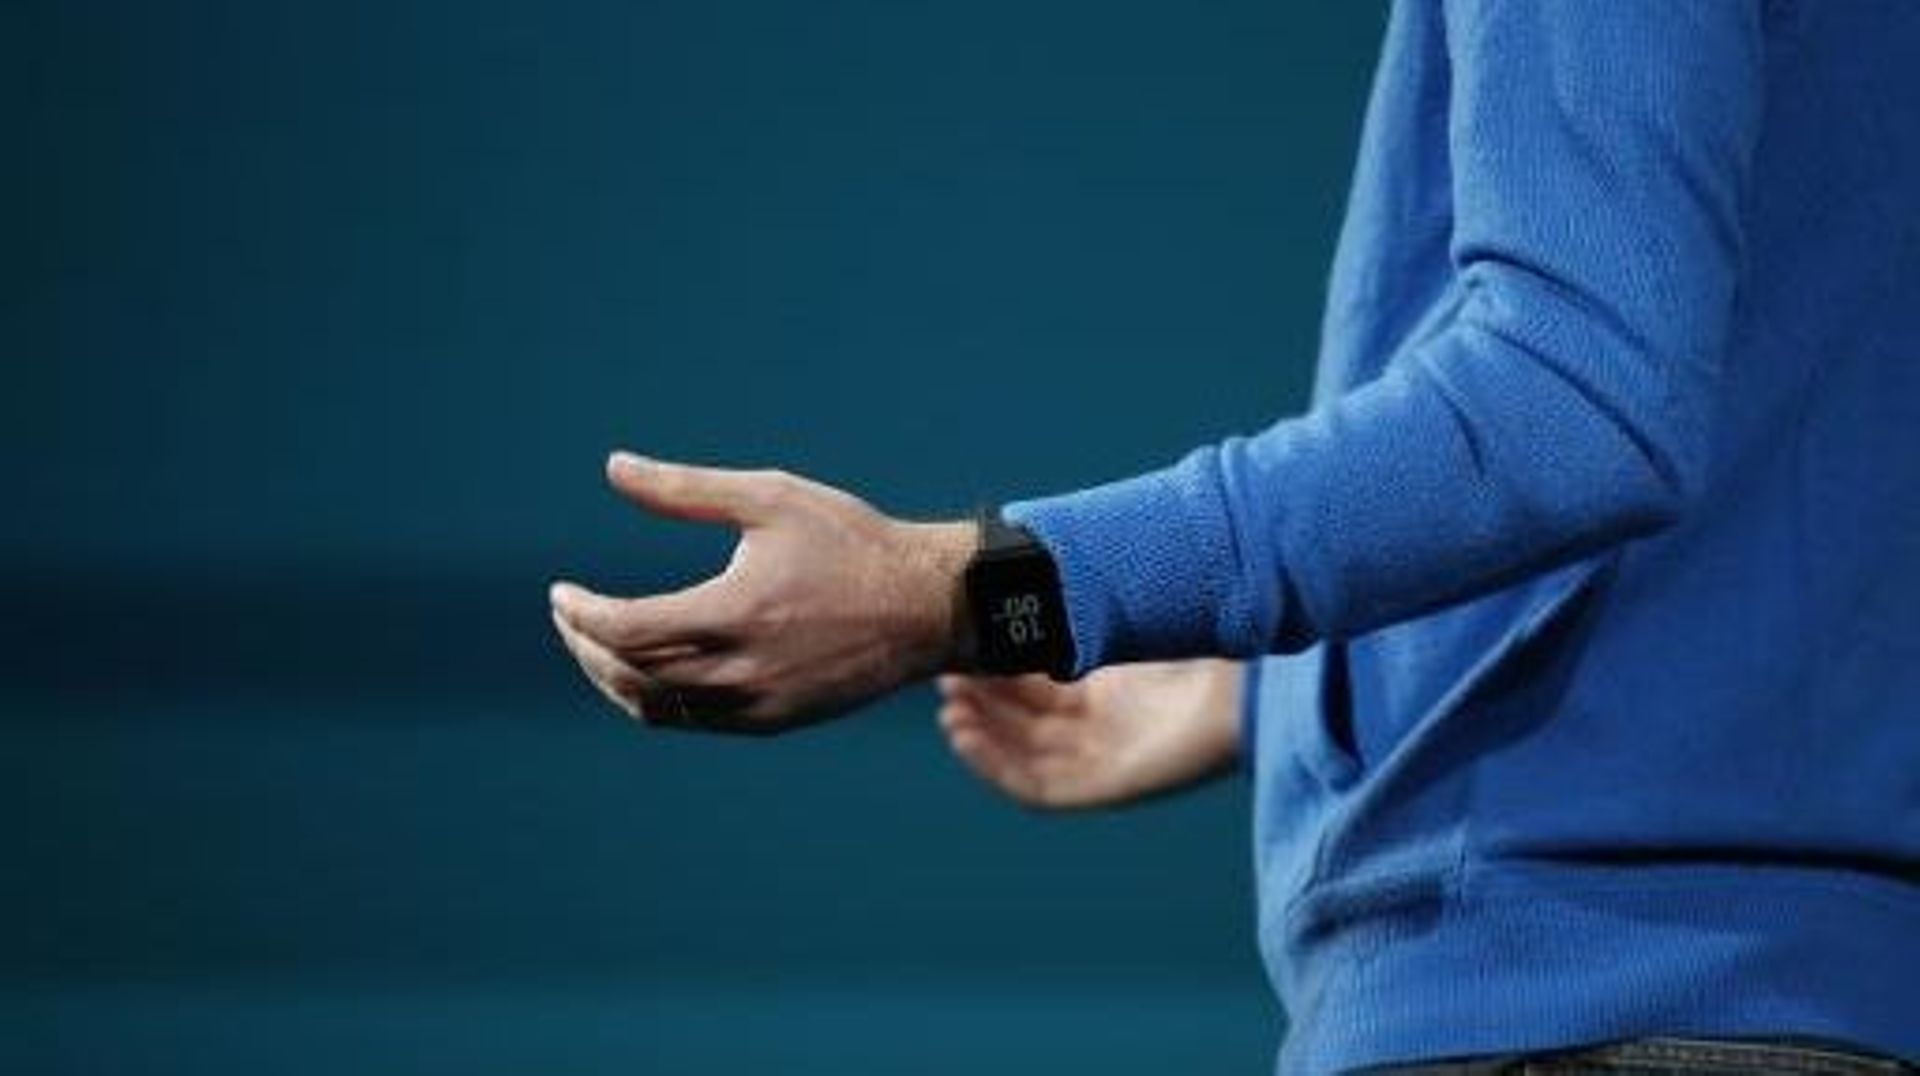 Une montre Android Wear de Google portée lors de la conférence Google I/O, à San Francisco, le 25 juin 2014